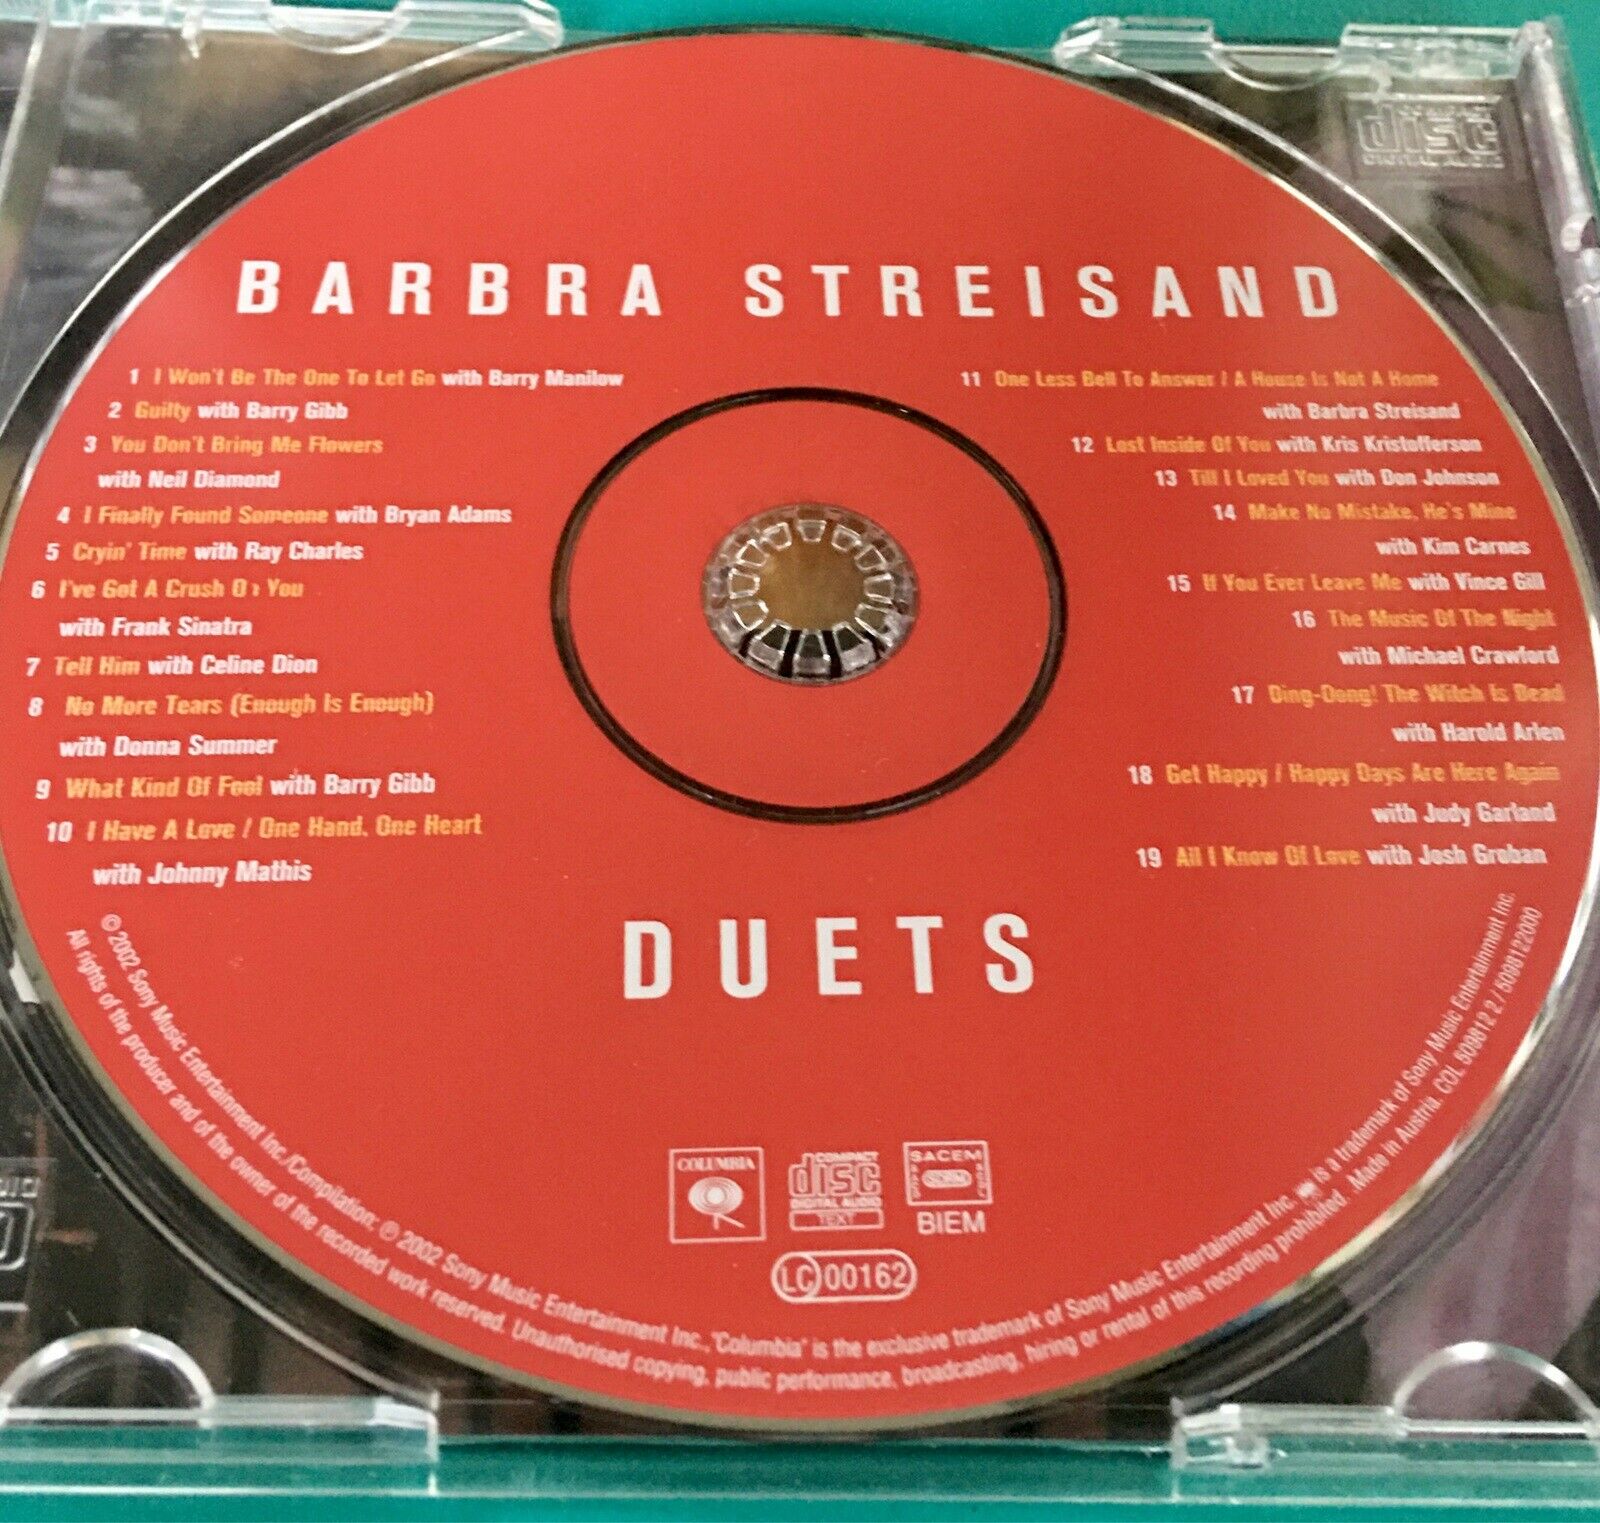 Barbra Streisand: Duets, pop